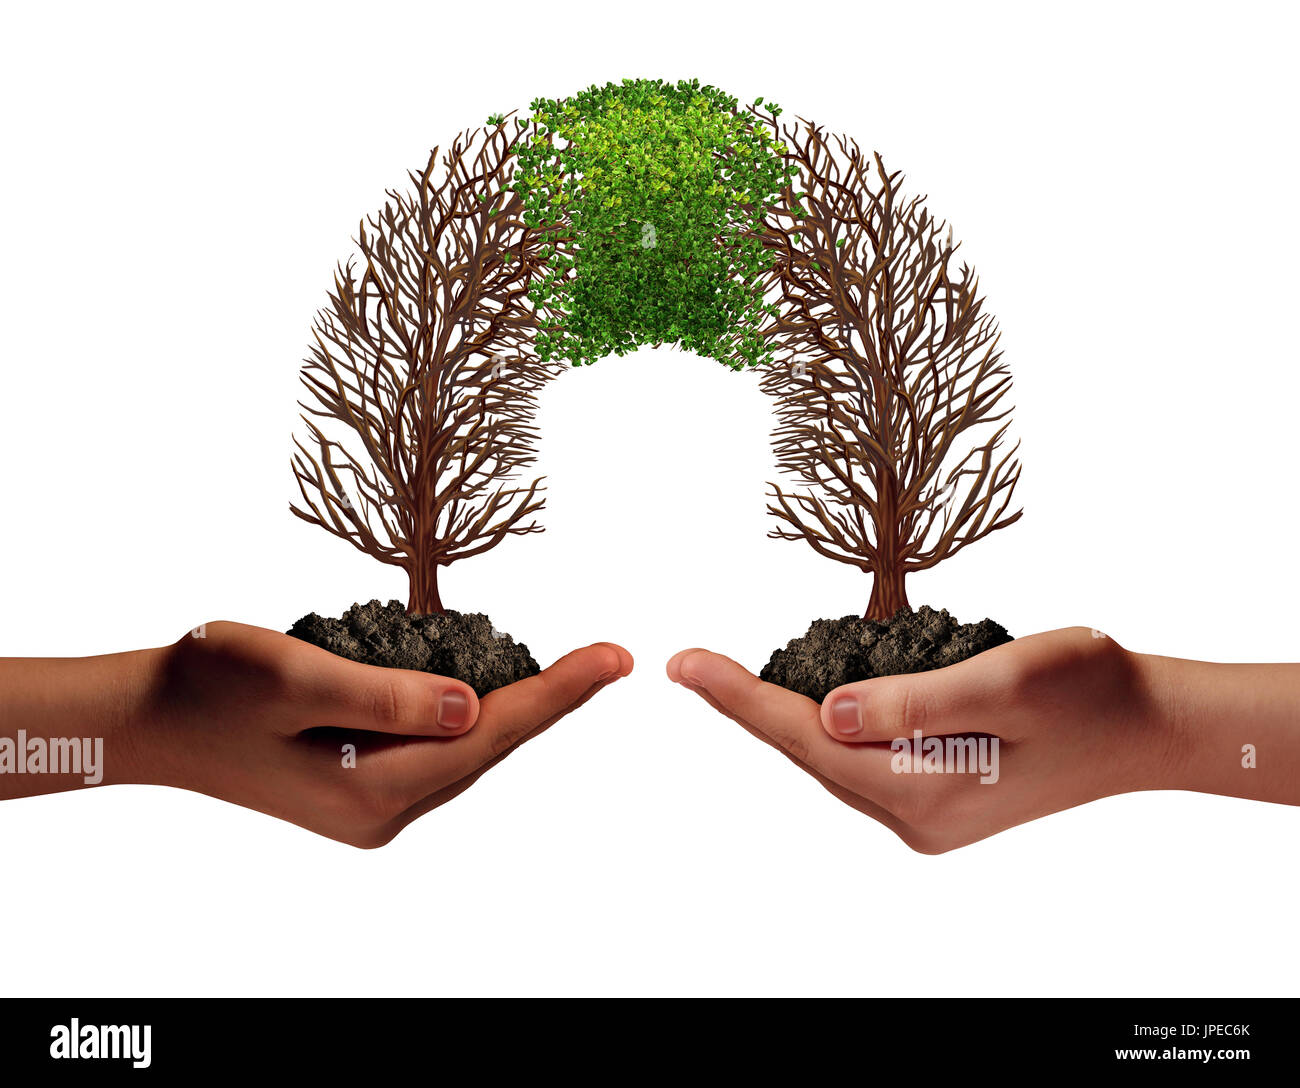 Eine geschäftliche Partnerschaft, wie zwei Menschen, die kämpfen, um Bäume, die miteinander verbinden und neues Wachstum zurück zu kommen, wie eine Zusammenarbeit. Stockfoto